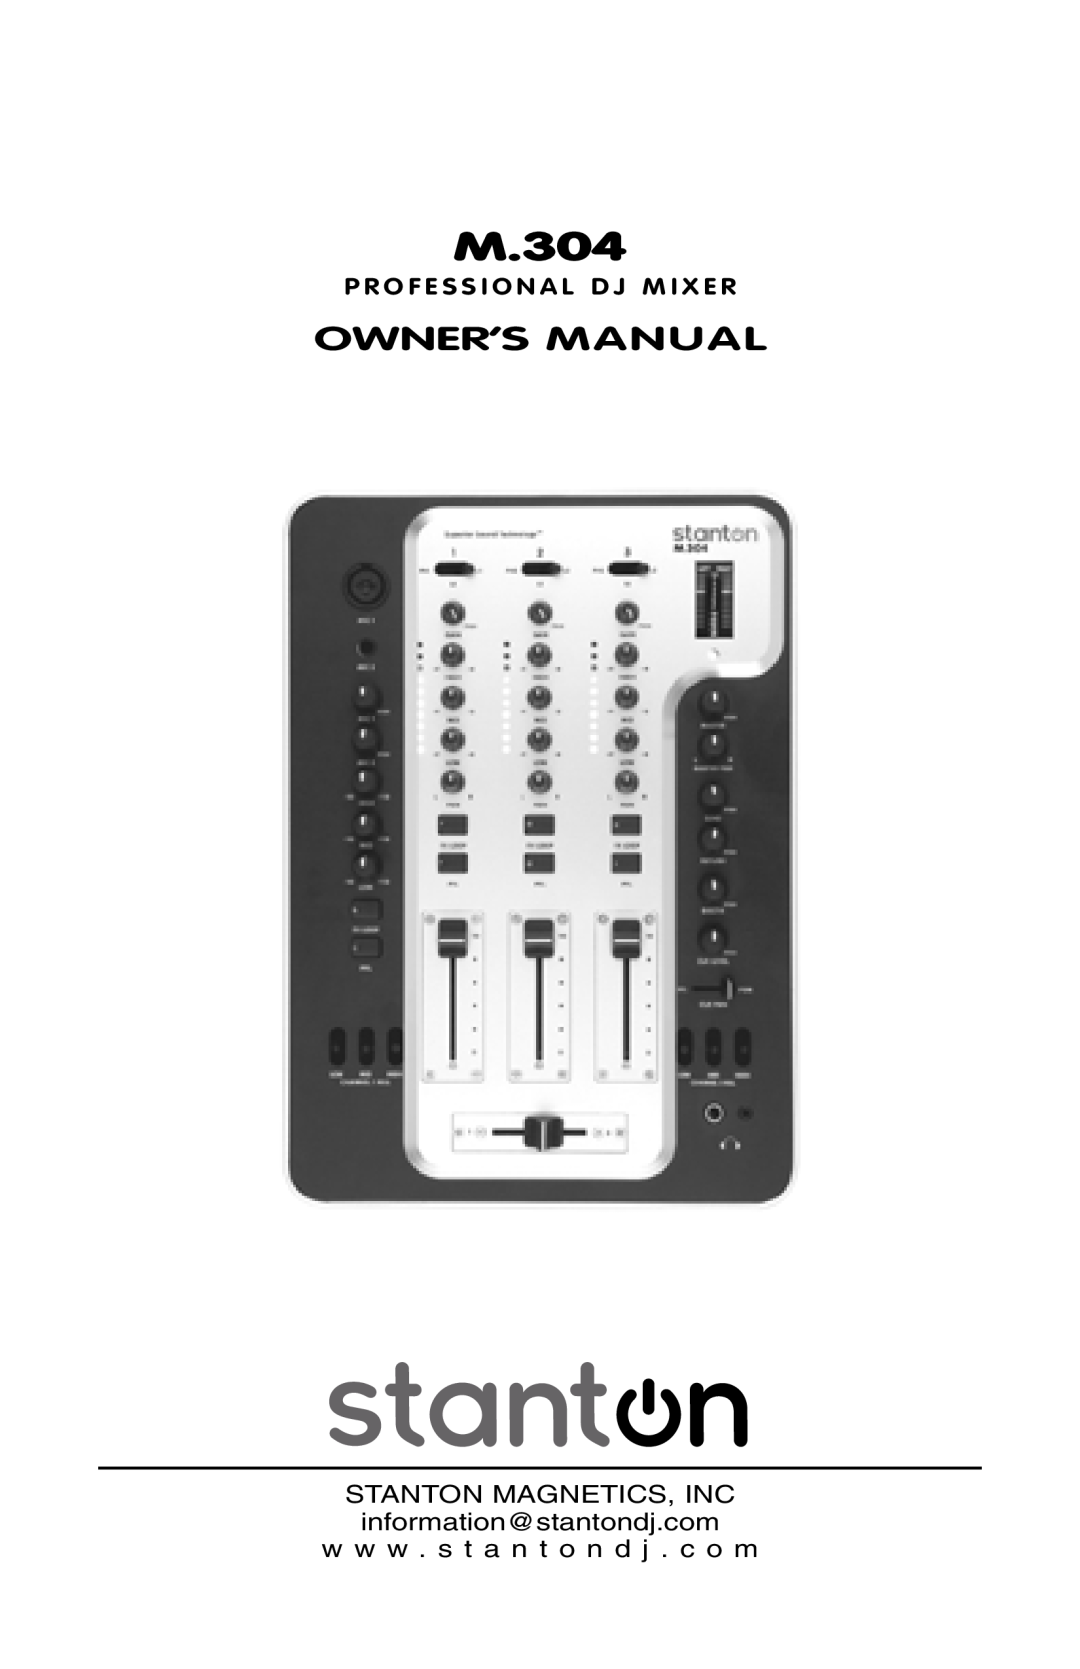 Stanton M304 owner manual M.304, Owner’S Manual, P R O F E S S I O N A L D J M I X E R 